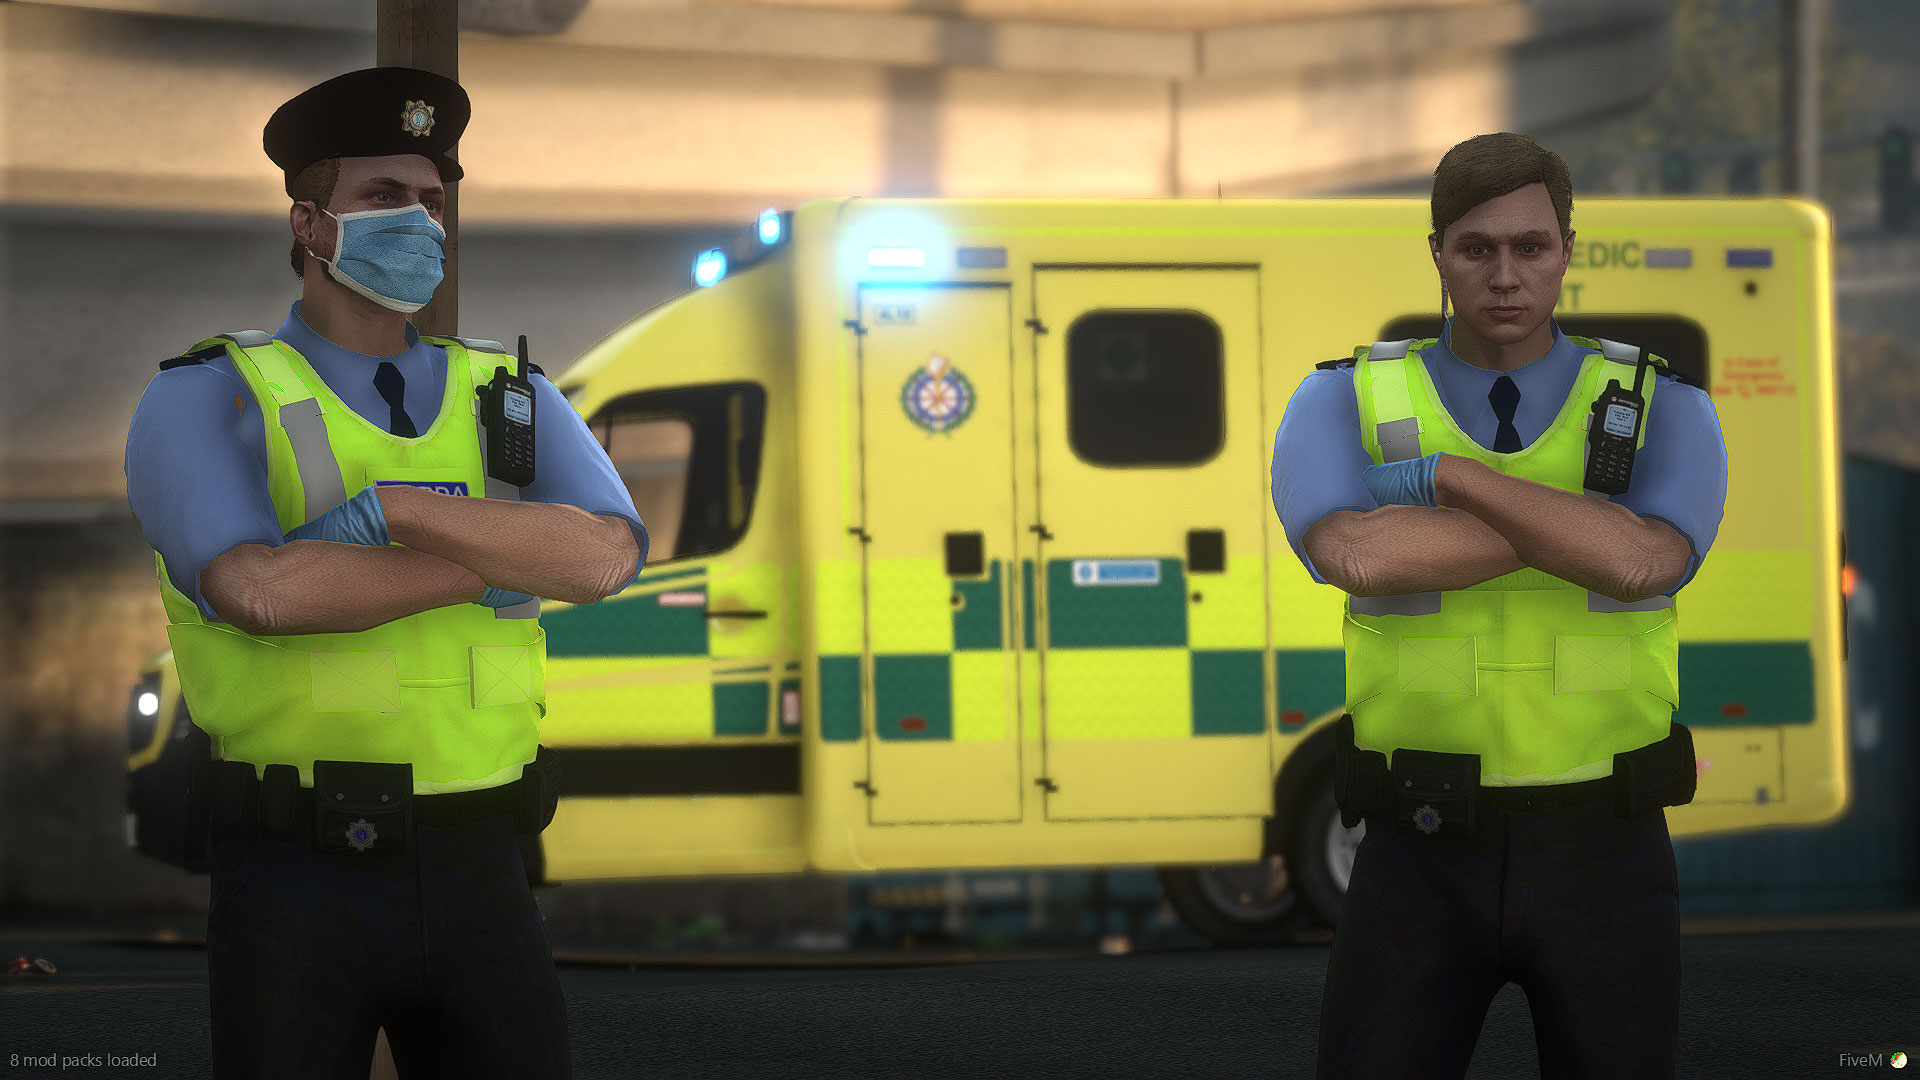 Irelands Emergency Services Role Playing Community Garda & Ambulance